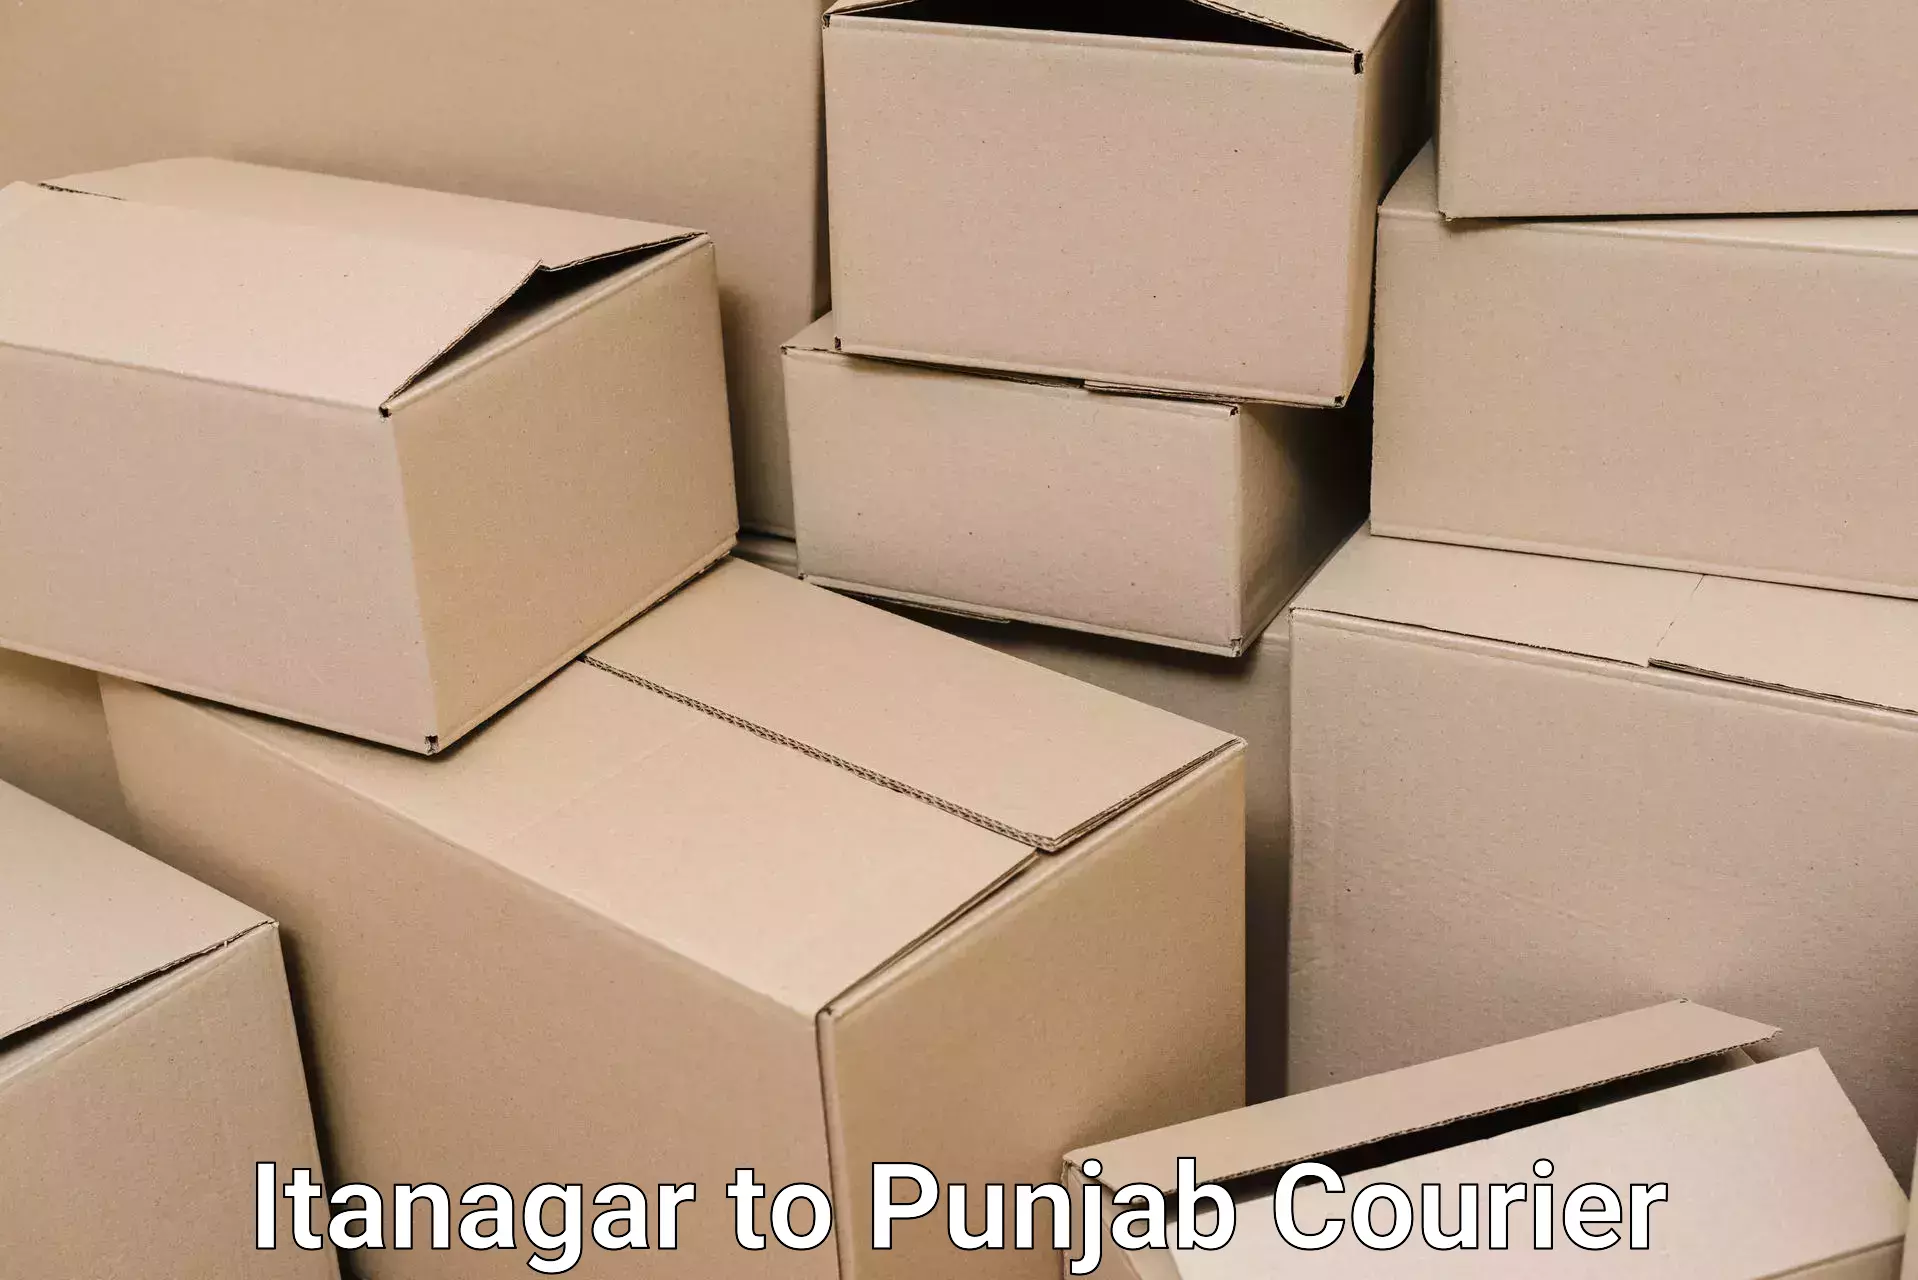 Furniture transport service Itanagar to Punjab